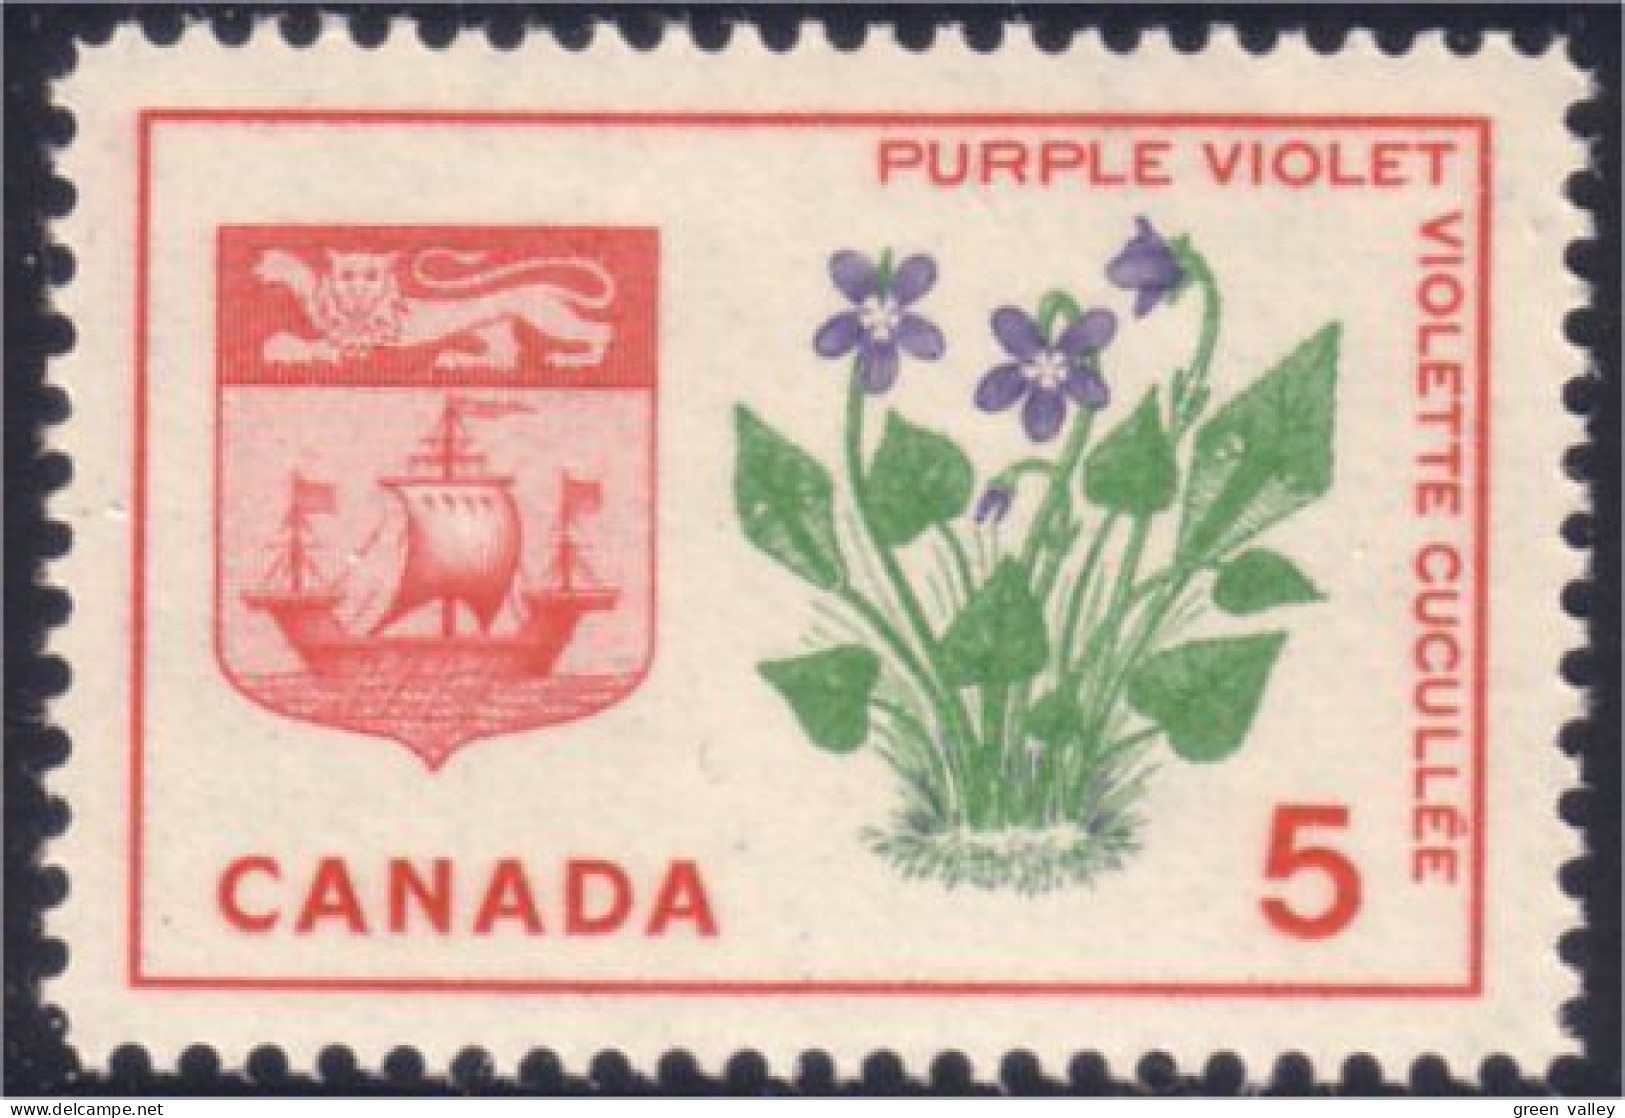 Canada Purple Violet Violette Armoiries Coat Of Arms MNH ** Neuf SC (04-21c) - Postzegels